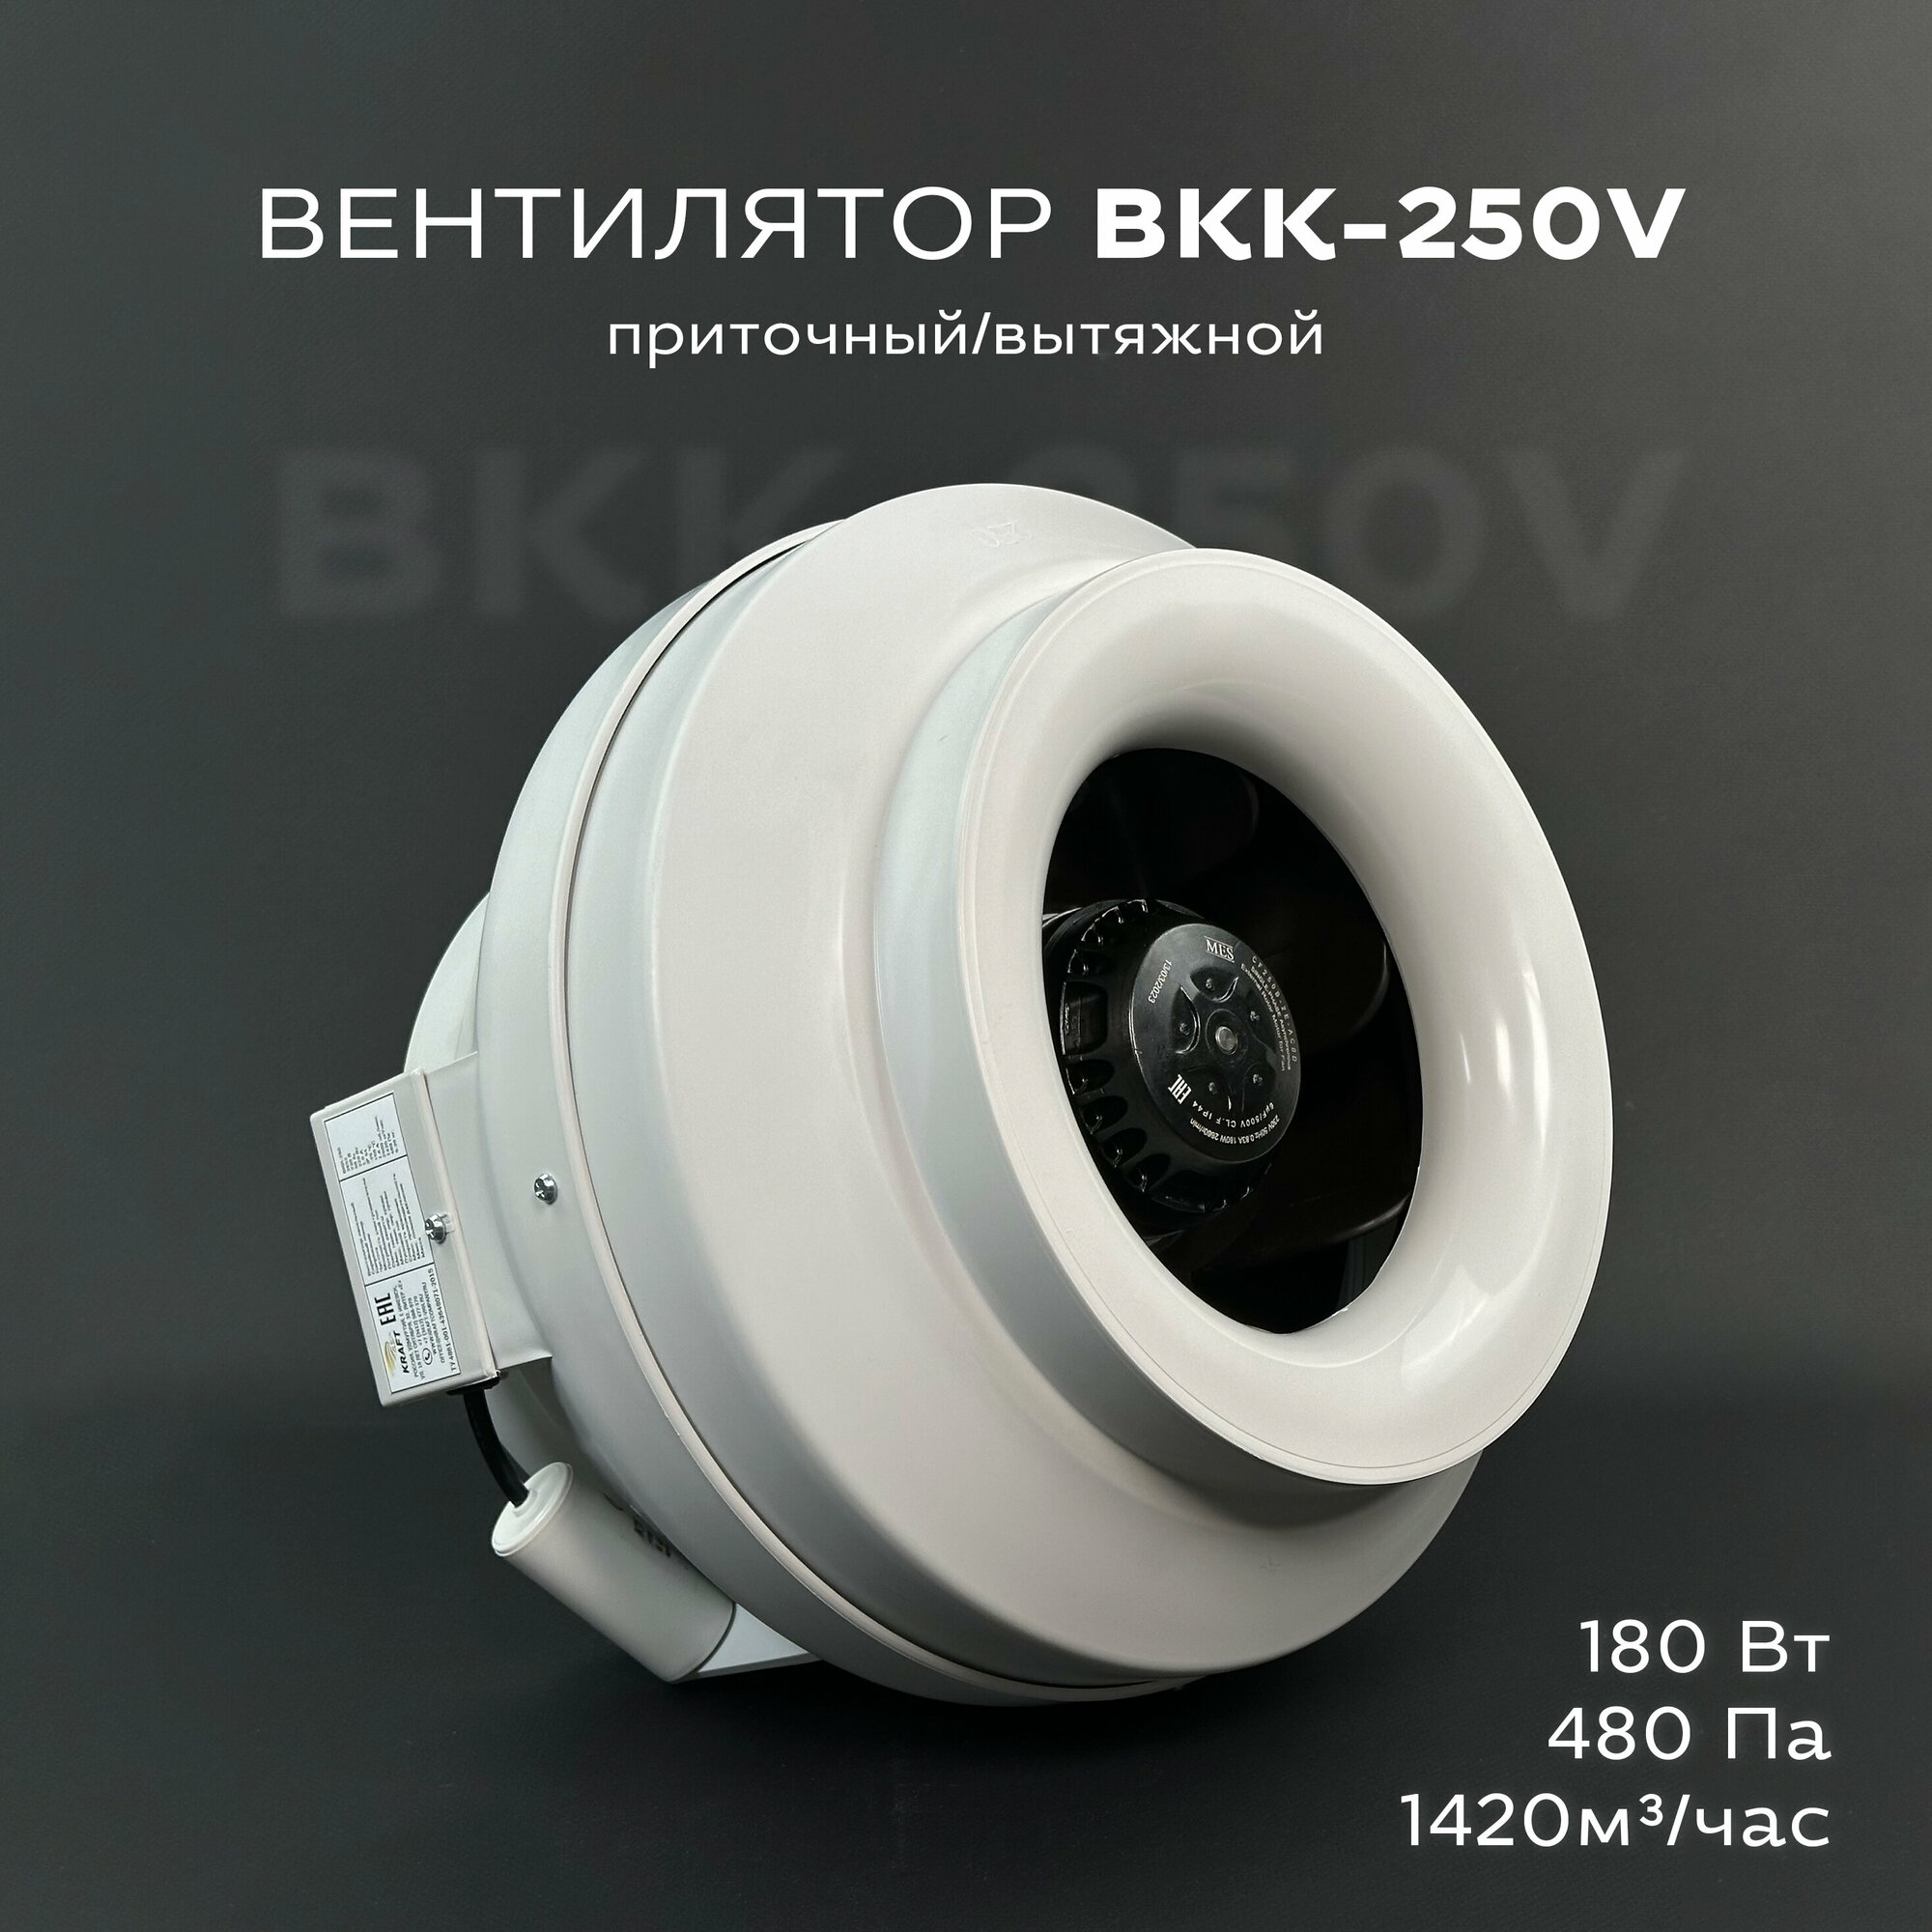 Вентилятор канальный круглый ВКК-250 V 220В 1420 м3/час 500 Па 220 Вт IP 54 для круглых воздуховодов диаметром 250 мм вытяжной или приточный